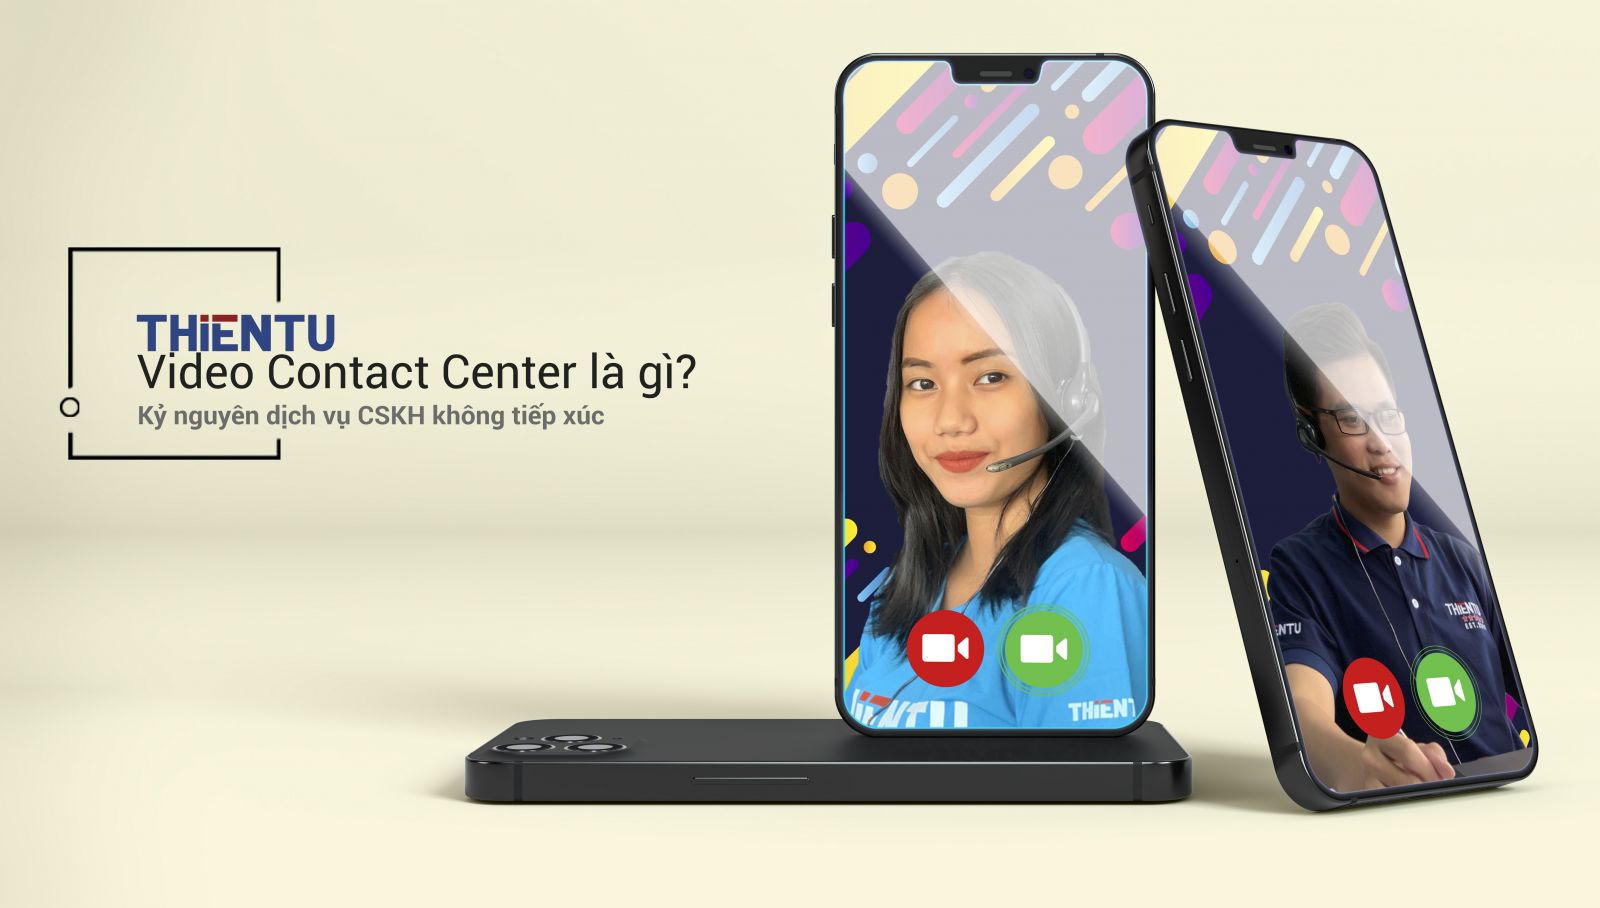 Video Contact Center là gì? 